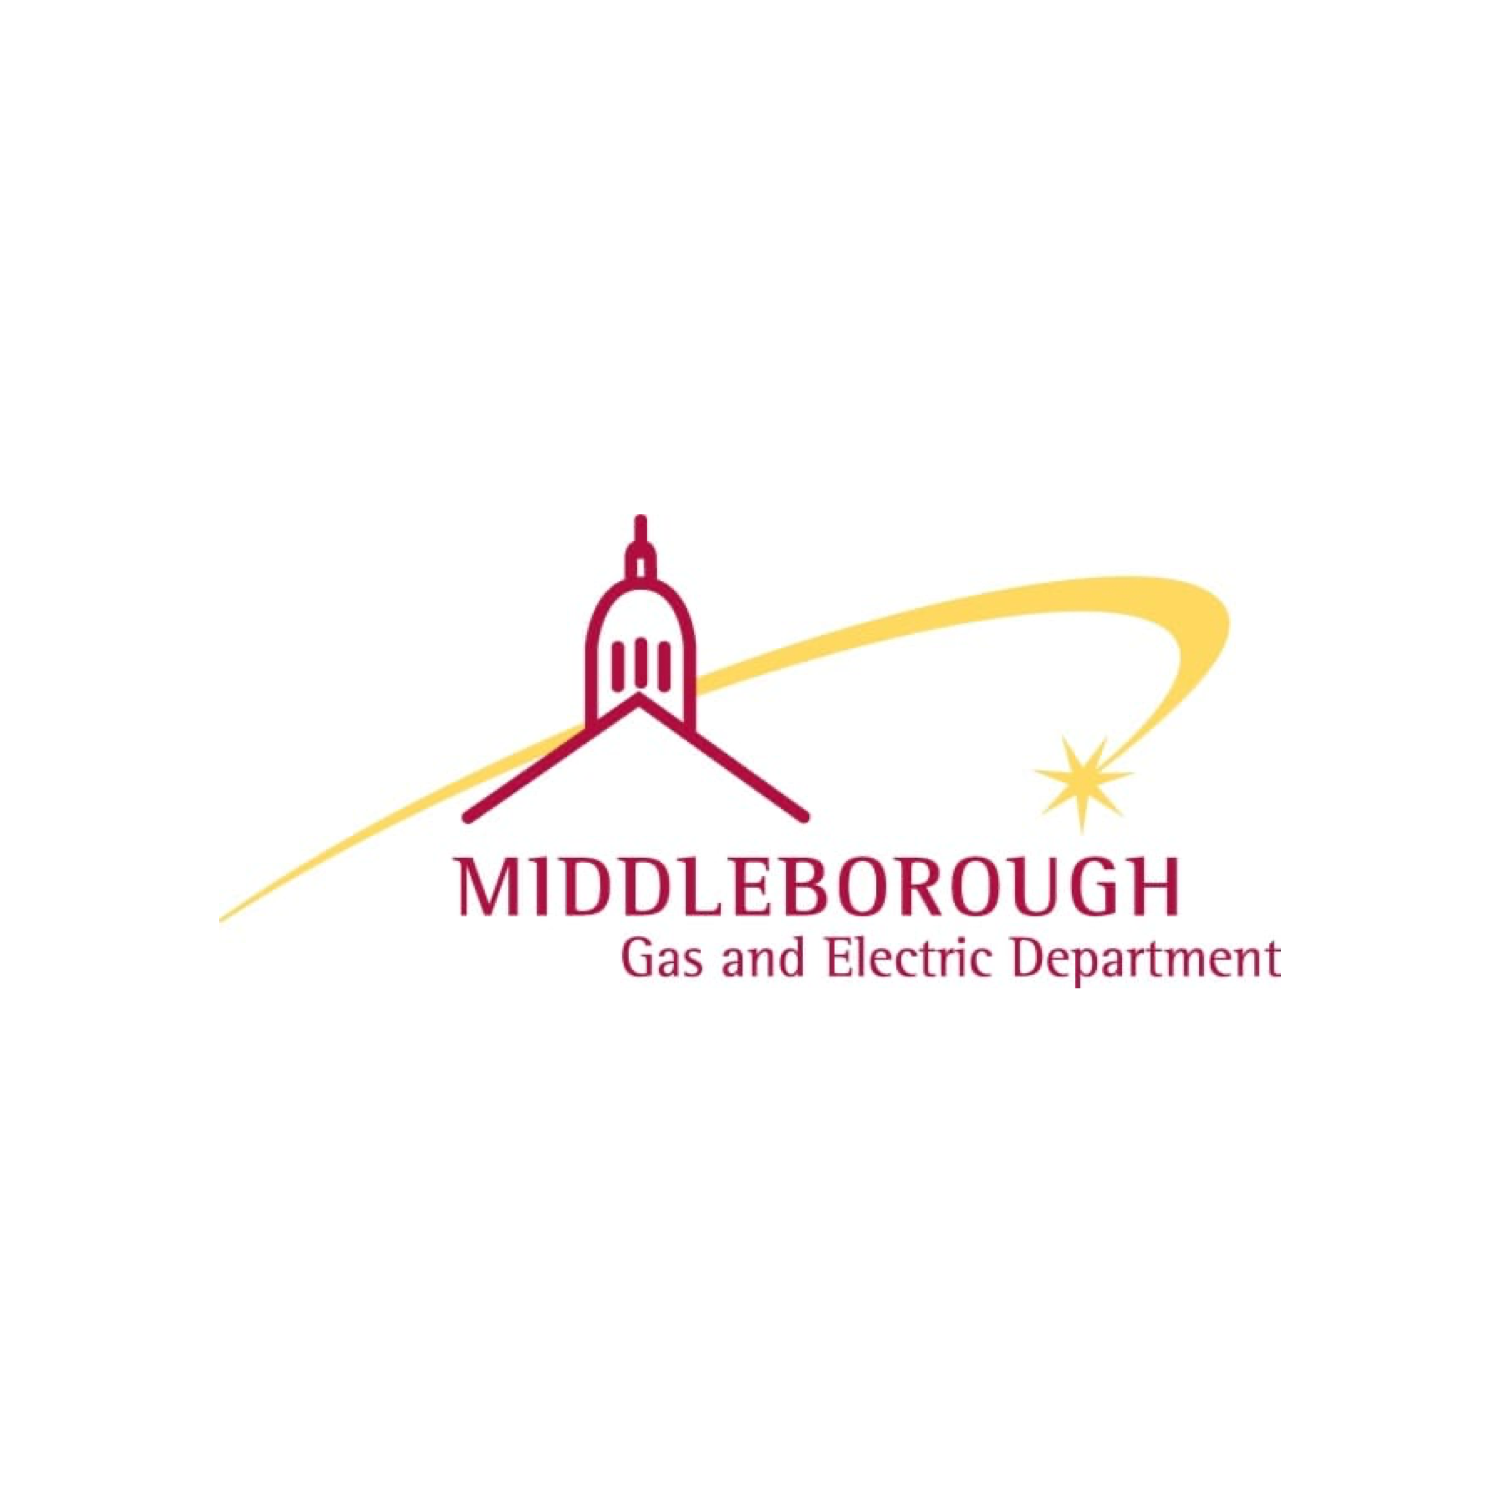 middleborough_logo.png